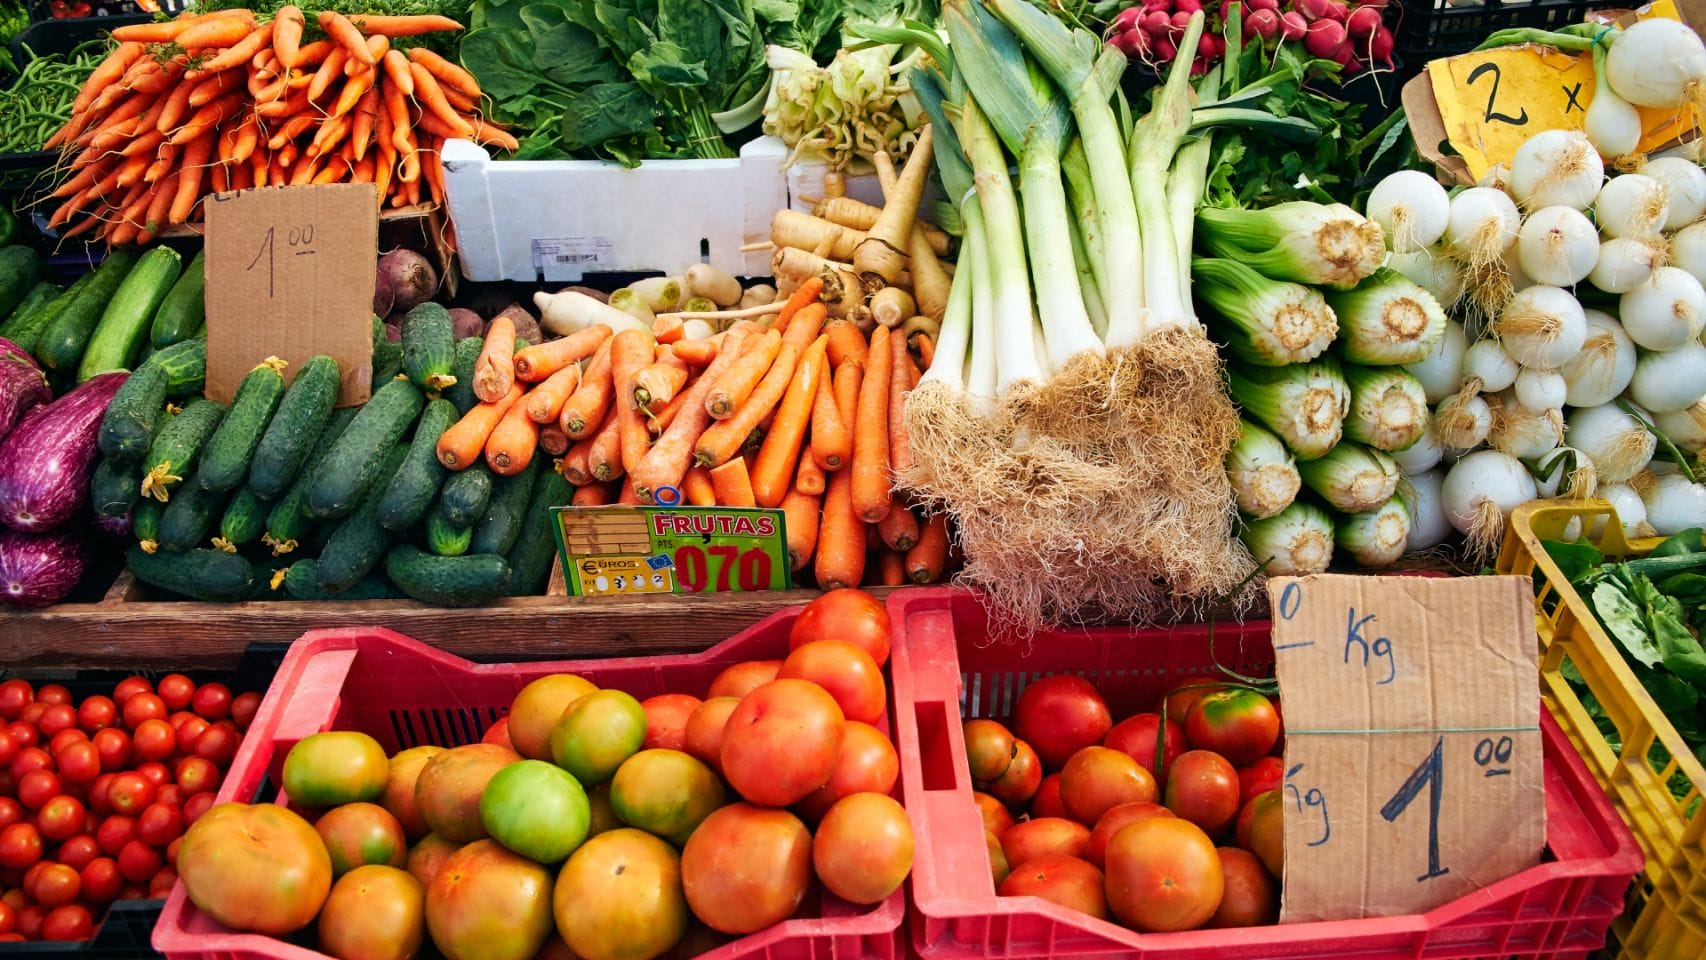 Puesto de verduras en un mercado al aire libre.